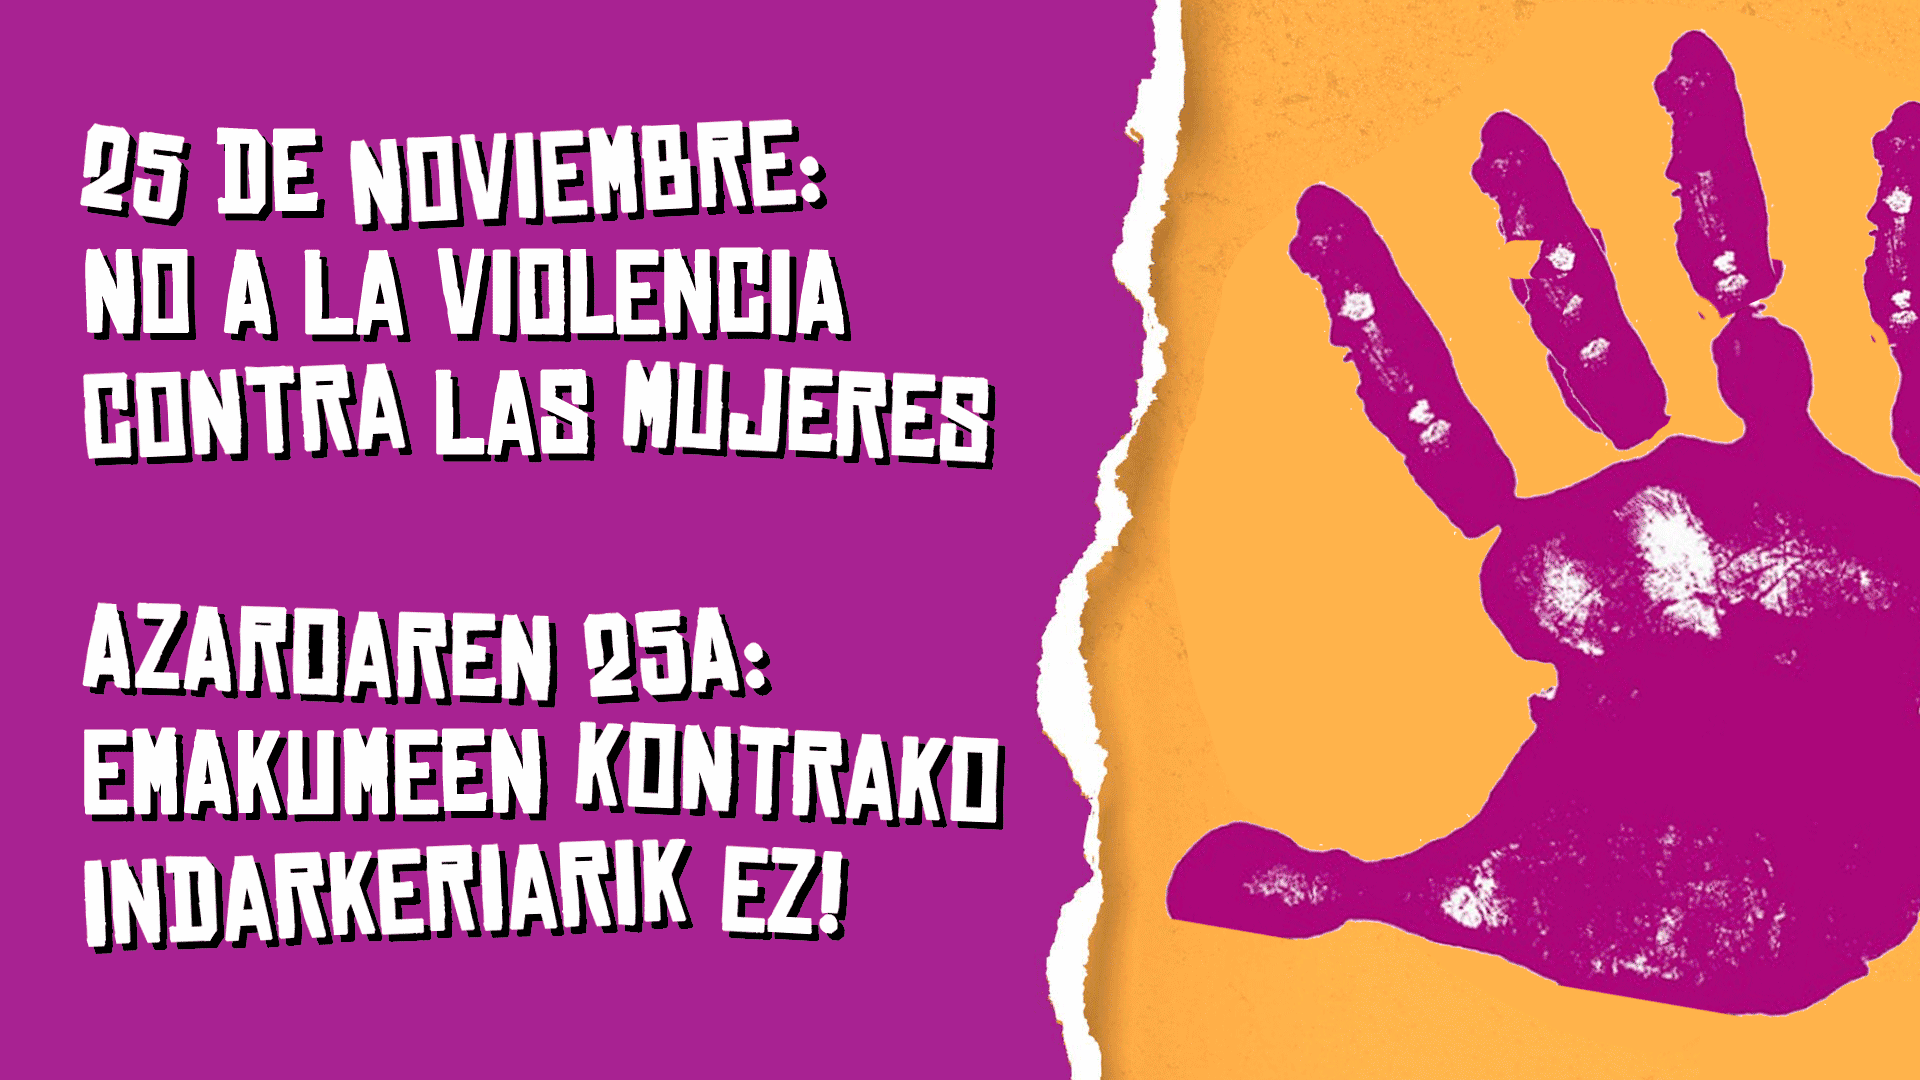 El 25 de noviembre (y todos los demás días) en la Escuela de Idiomas de Pamplona no toleramos la violencia contra la mujer.